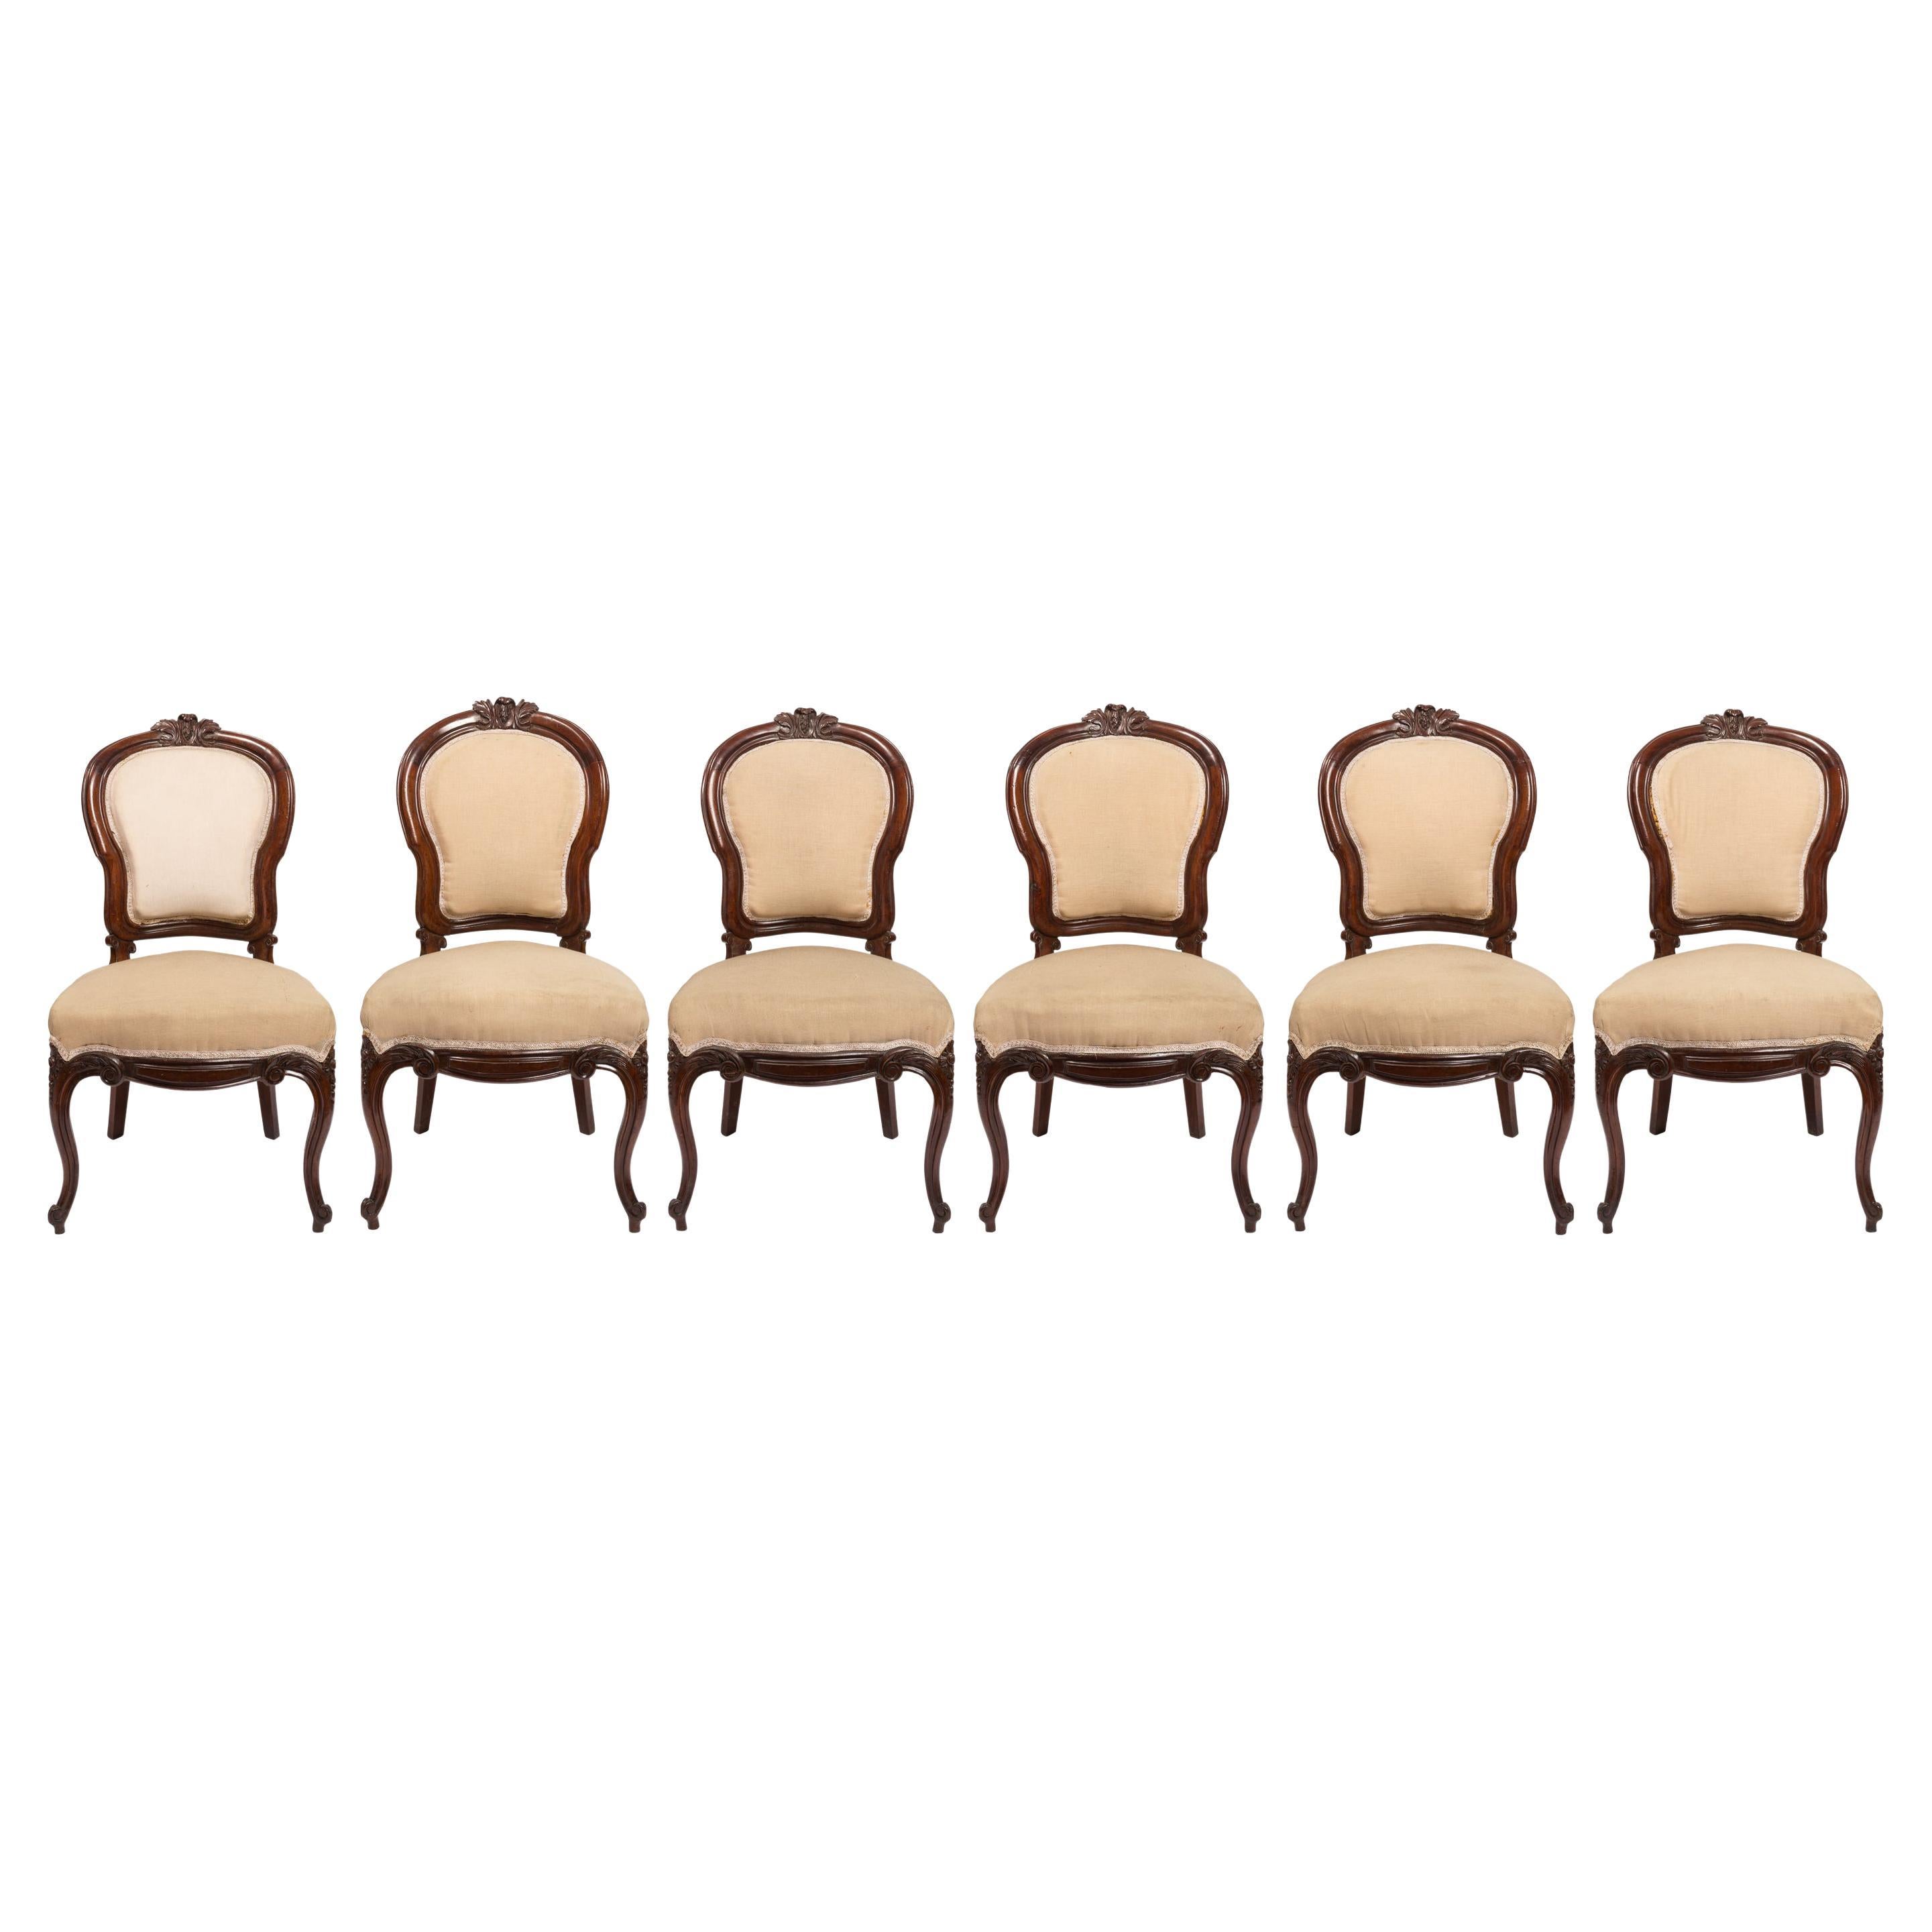 Ensemble de six chaises d'appoint espagnoles tapissées et sculptées de la période Isabelina/Victoriane